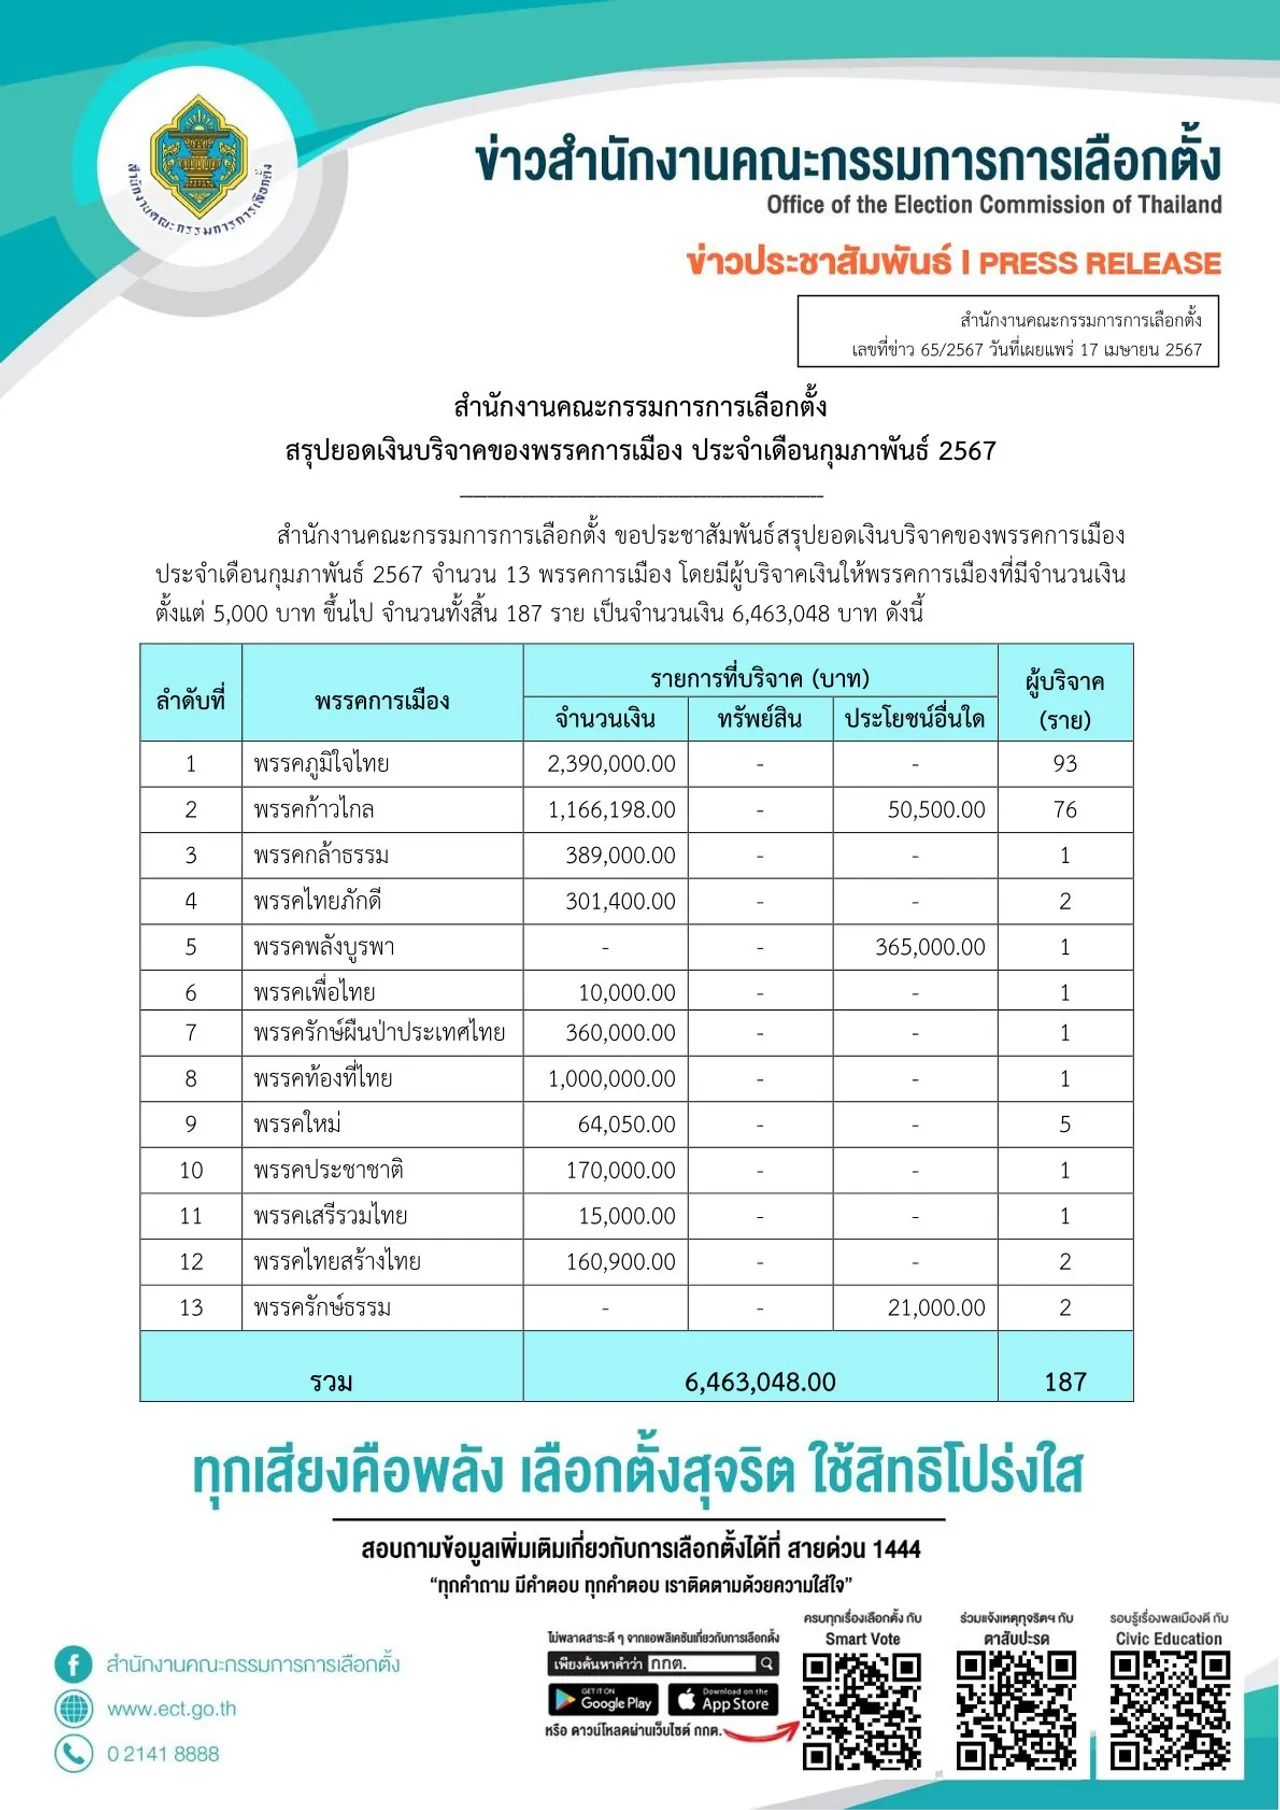 เปิดยอดเงินบริจาคพรรคการเมือง ก.พ. 67 “ภูมิใจไทย” มากสุด 2.39 ล้านบาท